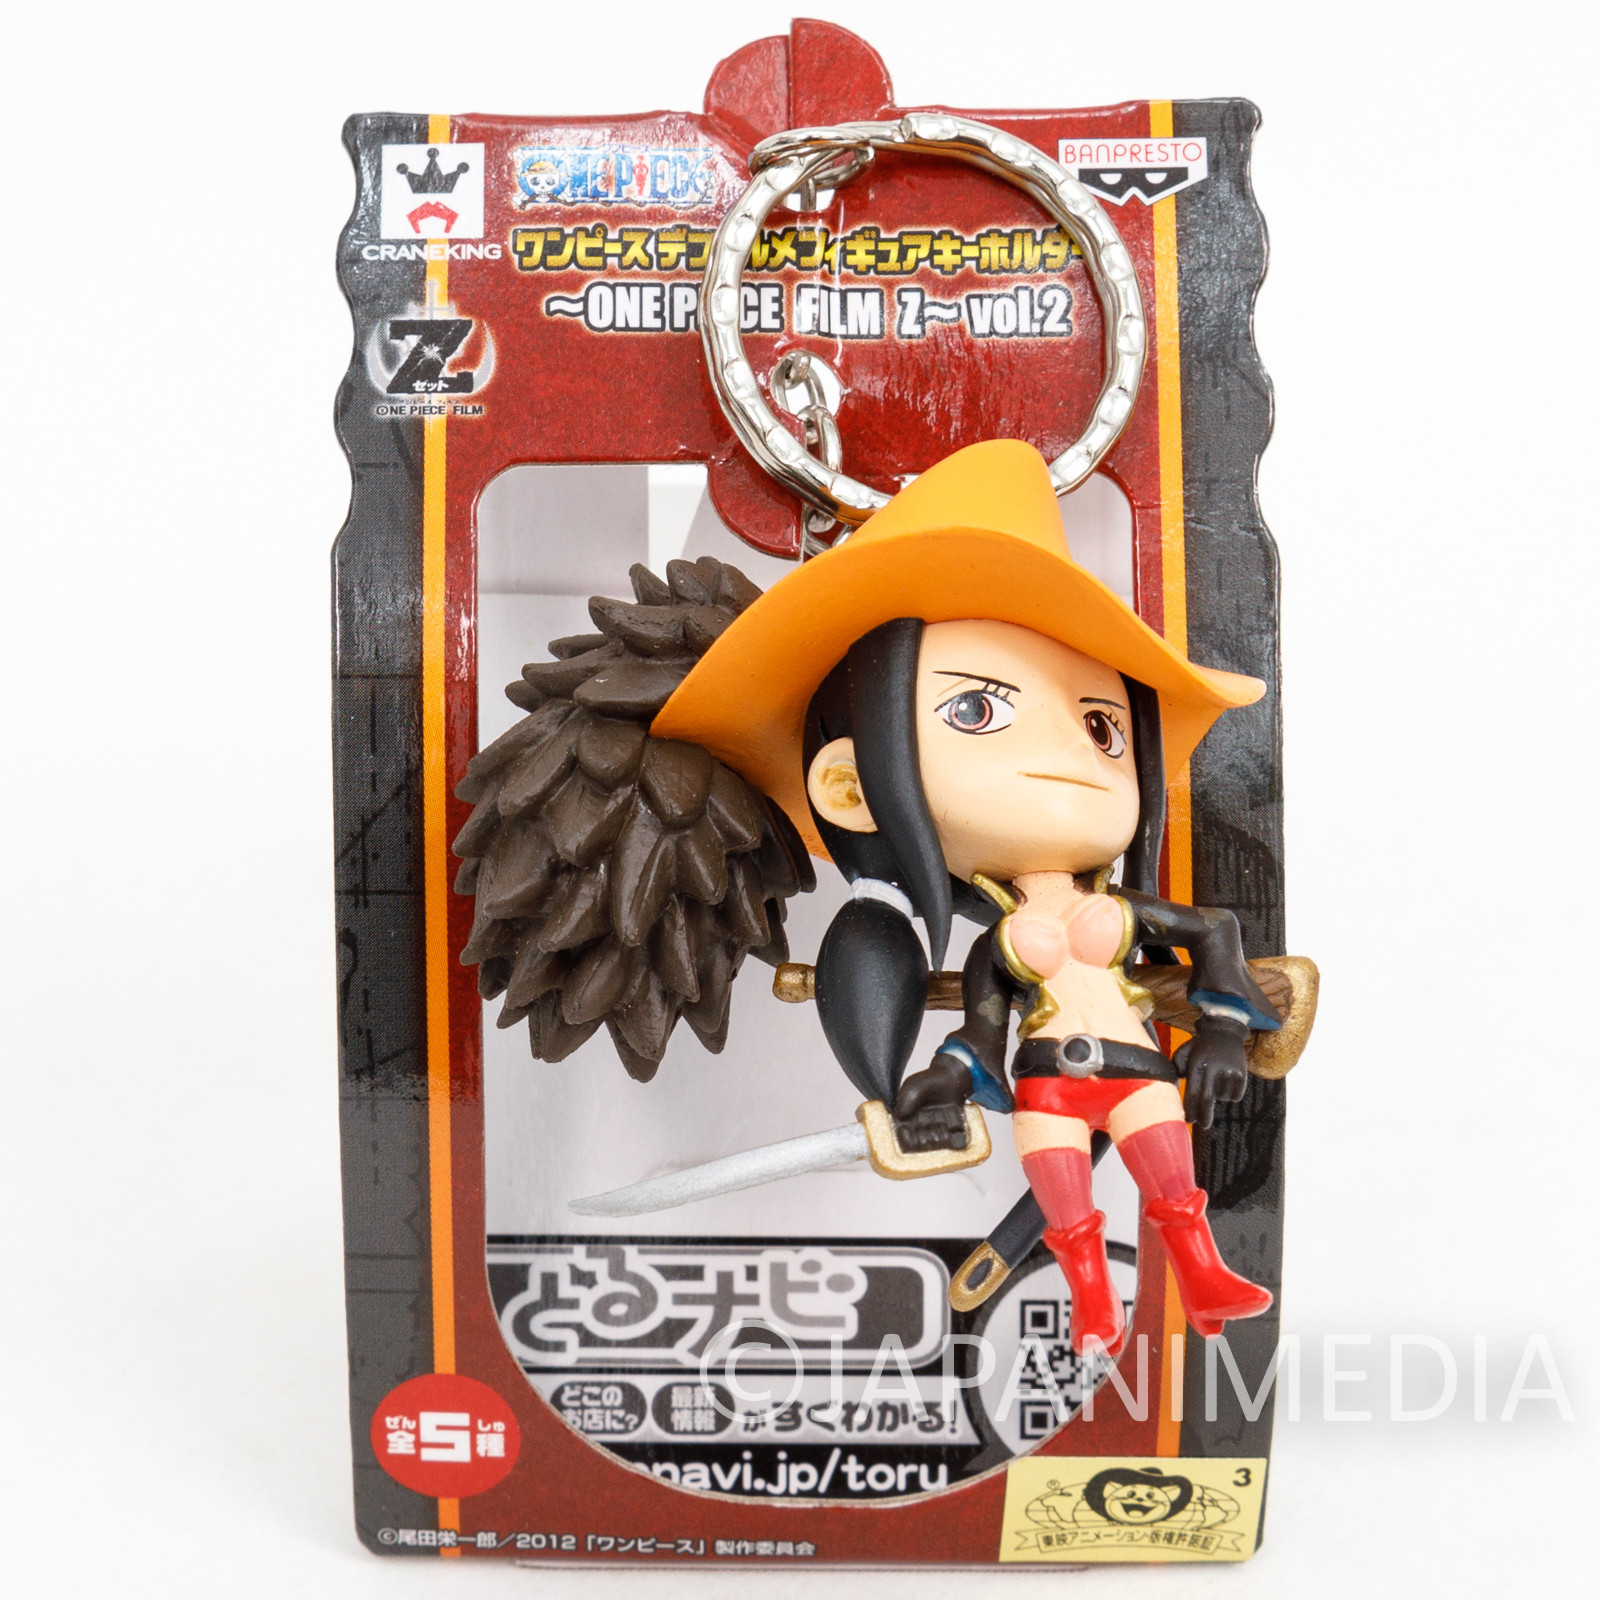 One Piece Film Z Nico Robin Figure Keychain Banpresto JAPAN ANIME -  Japanimedia Store